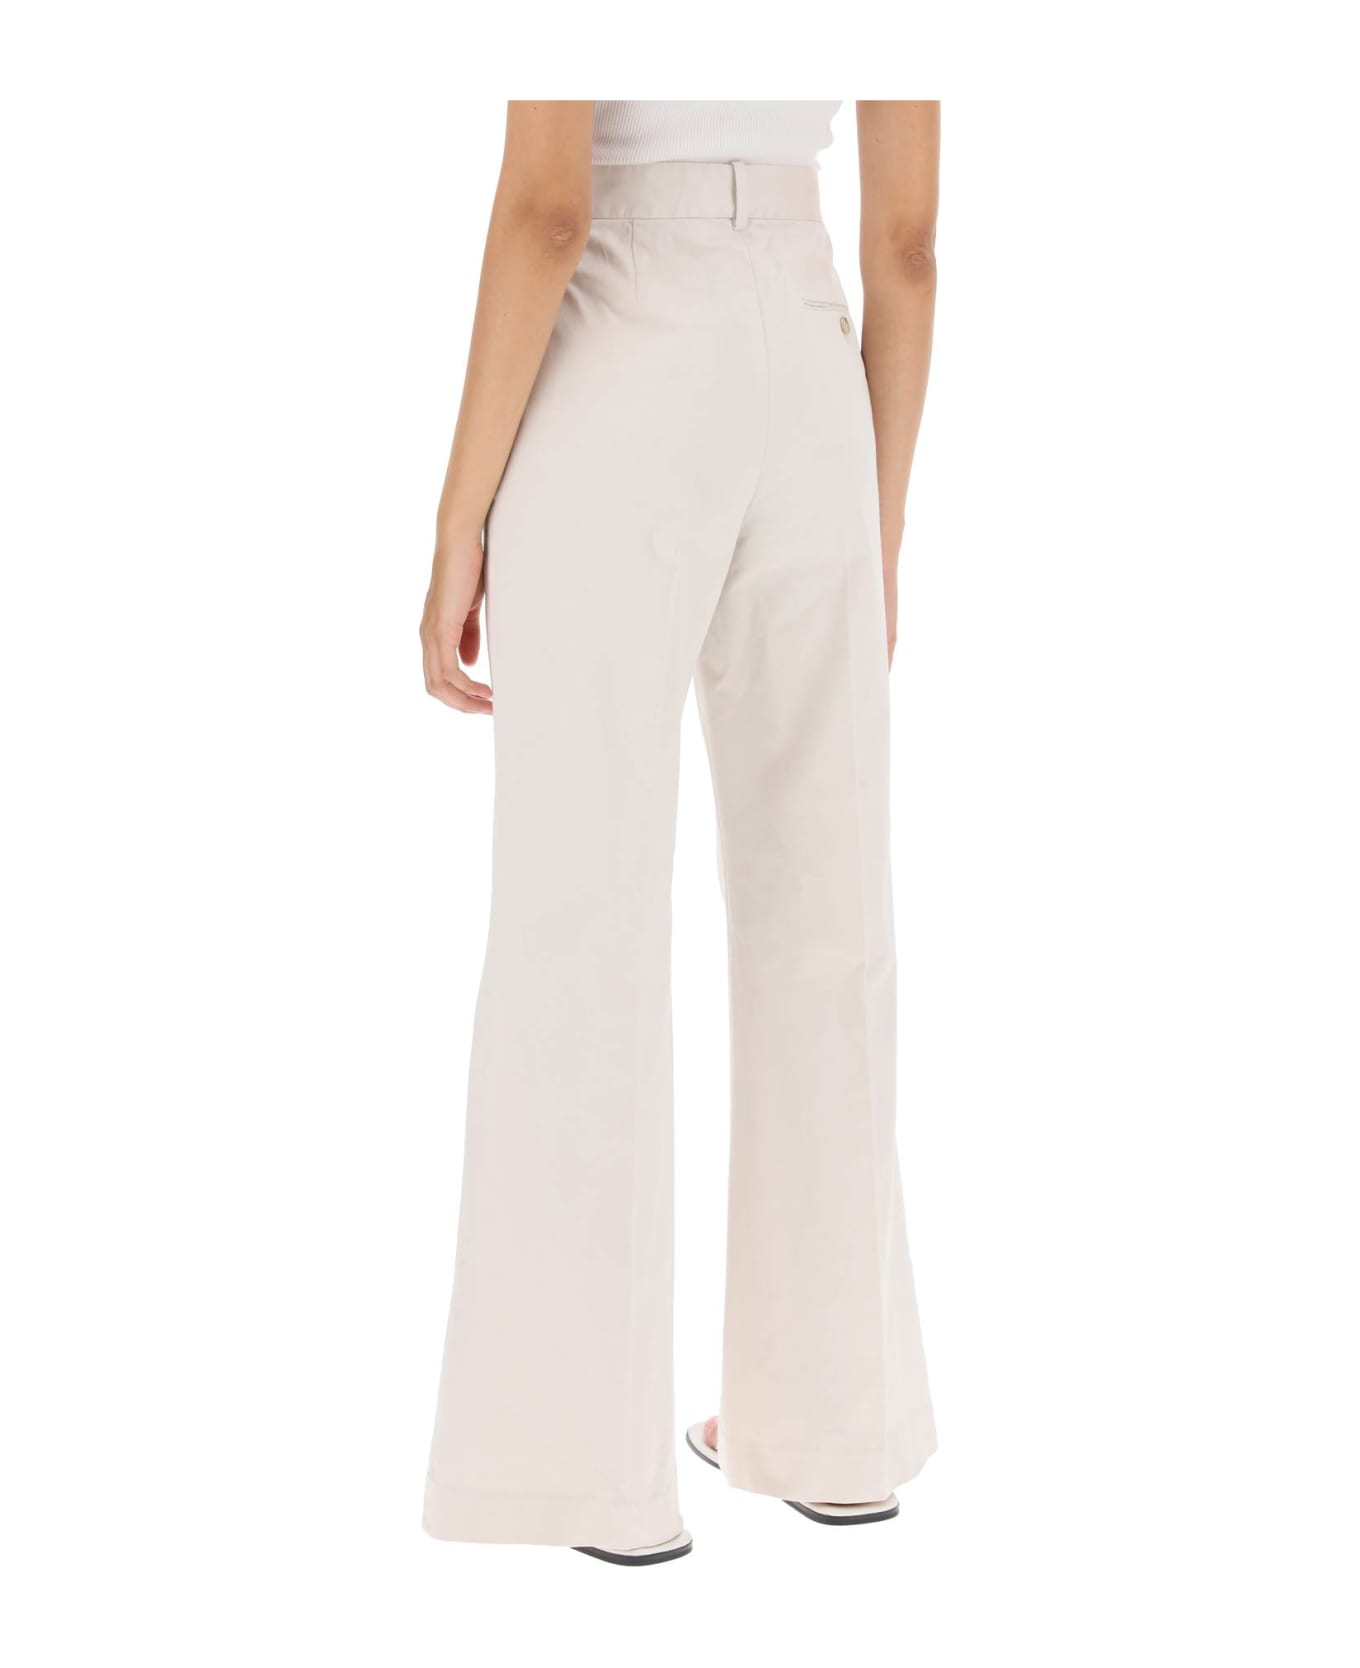 Polo Ralph Lauren Cotton Bootcut Pants - STONE PEBBLE (White)